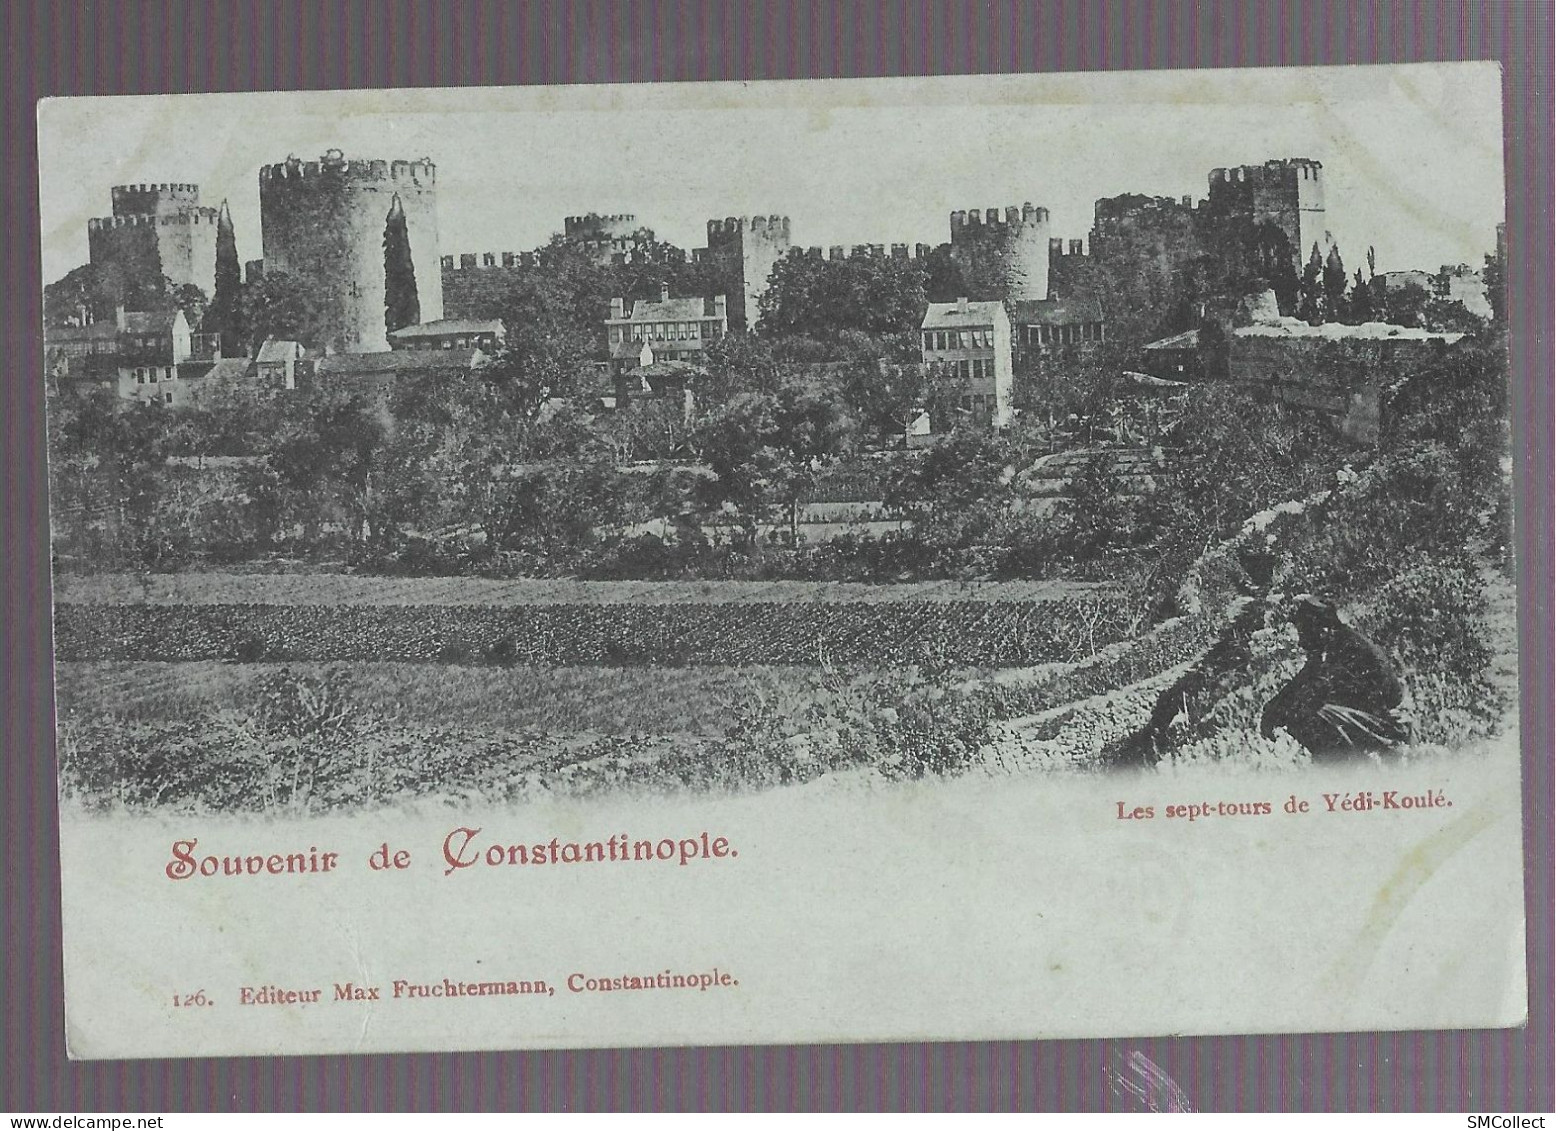 VOIR DESCRIPTION. Souvenir De Constantinople, Les Sept Tours De Yédi-Koulé (9921) - Türkei